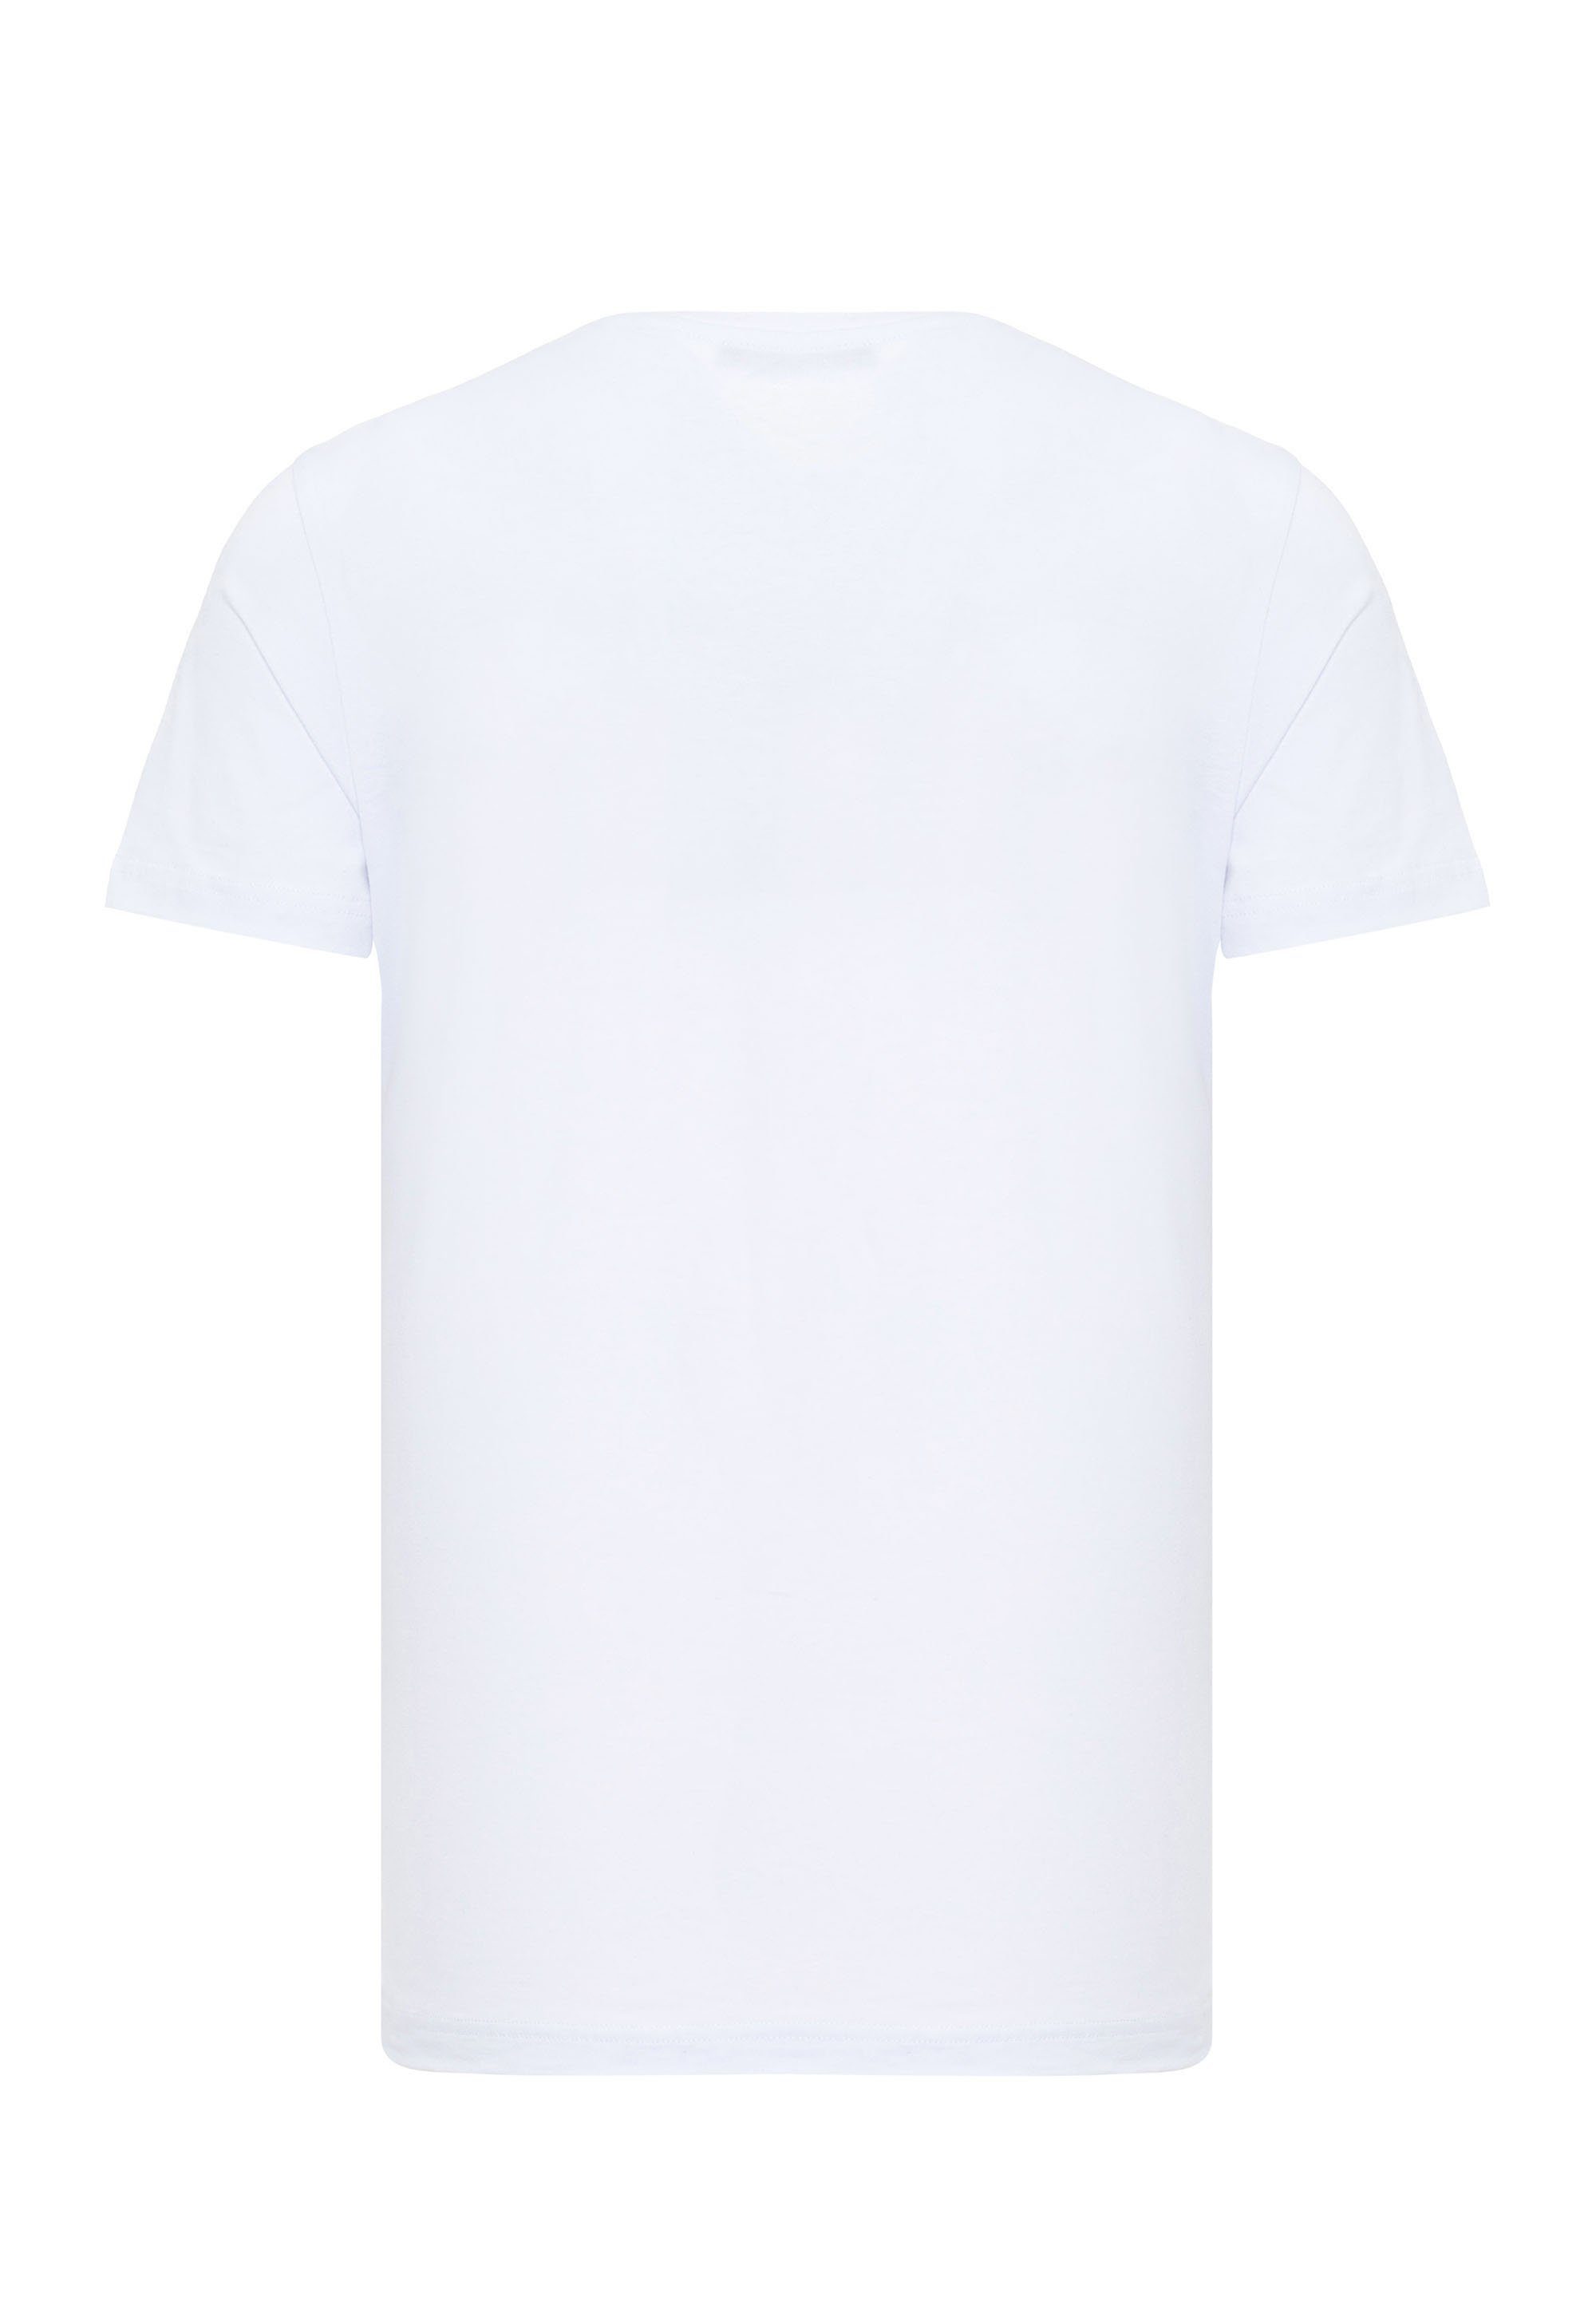 & mit weiß coolem Frontprint Baxx T-Shirt Cipo